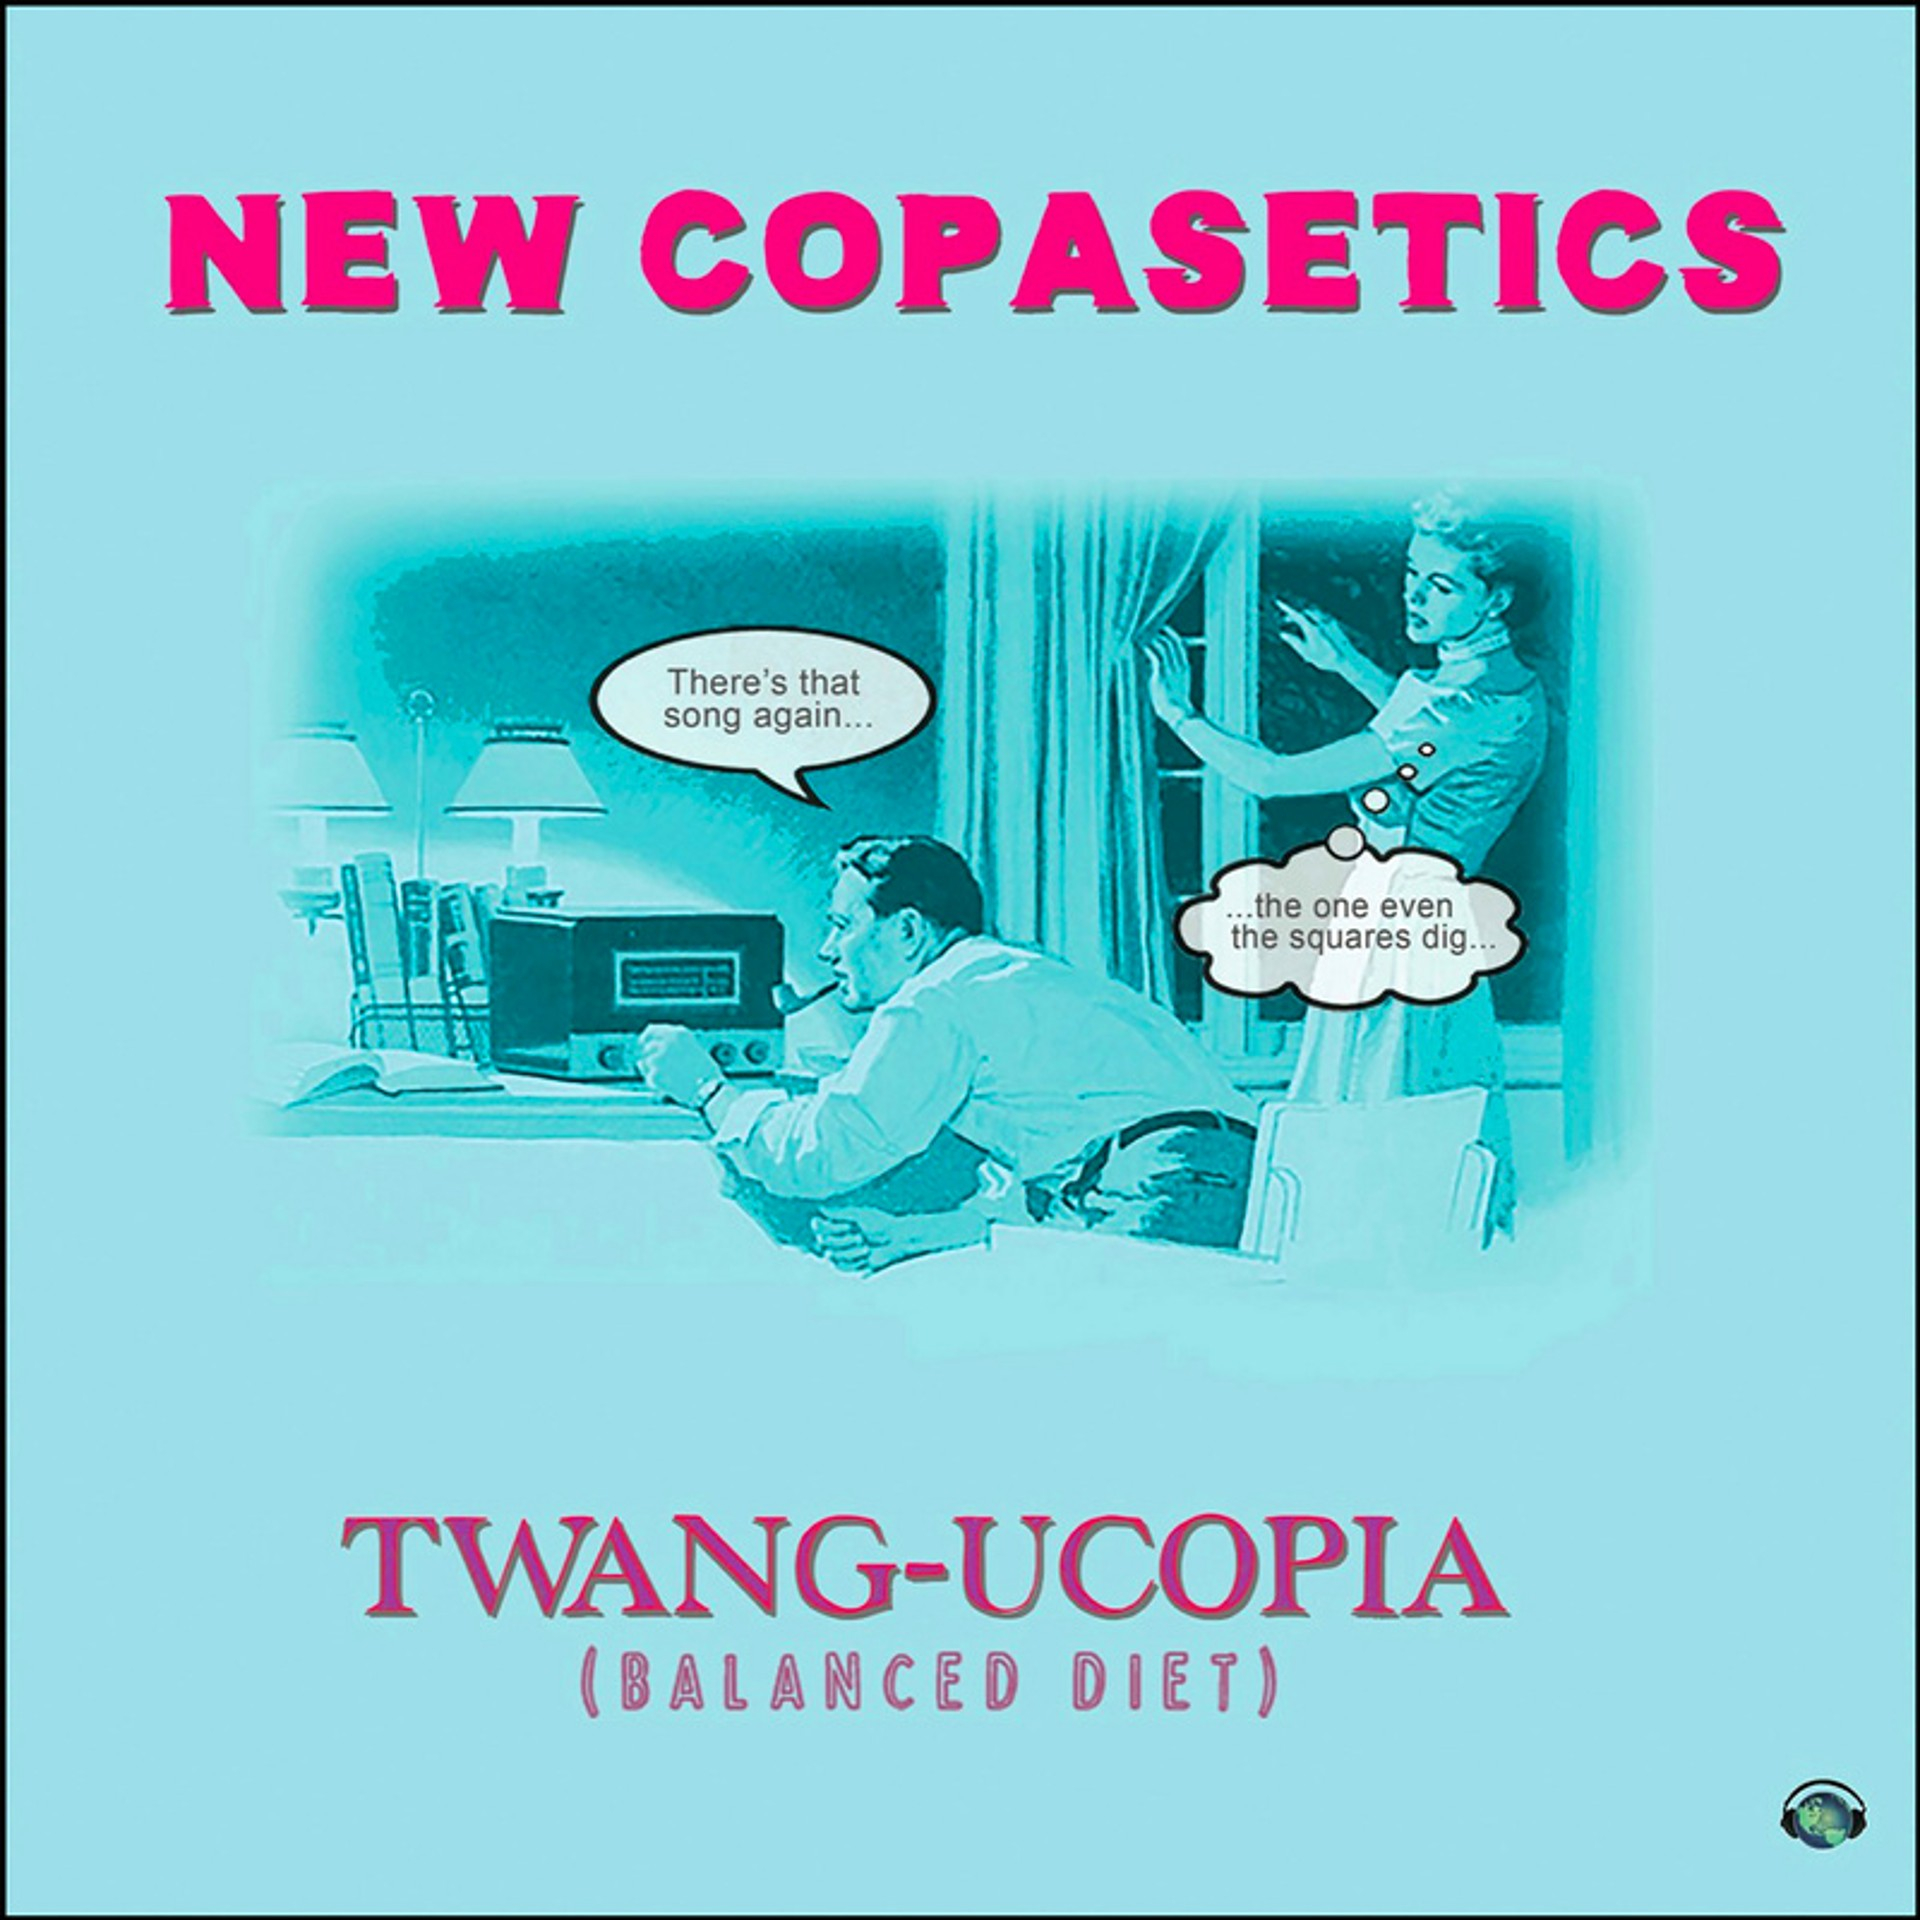 New Copasetics | "Twang-Ucopia"